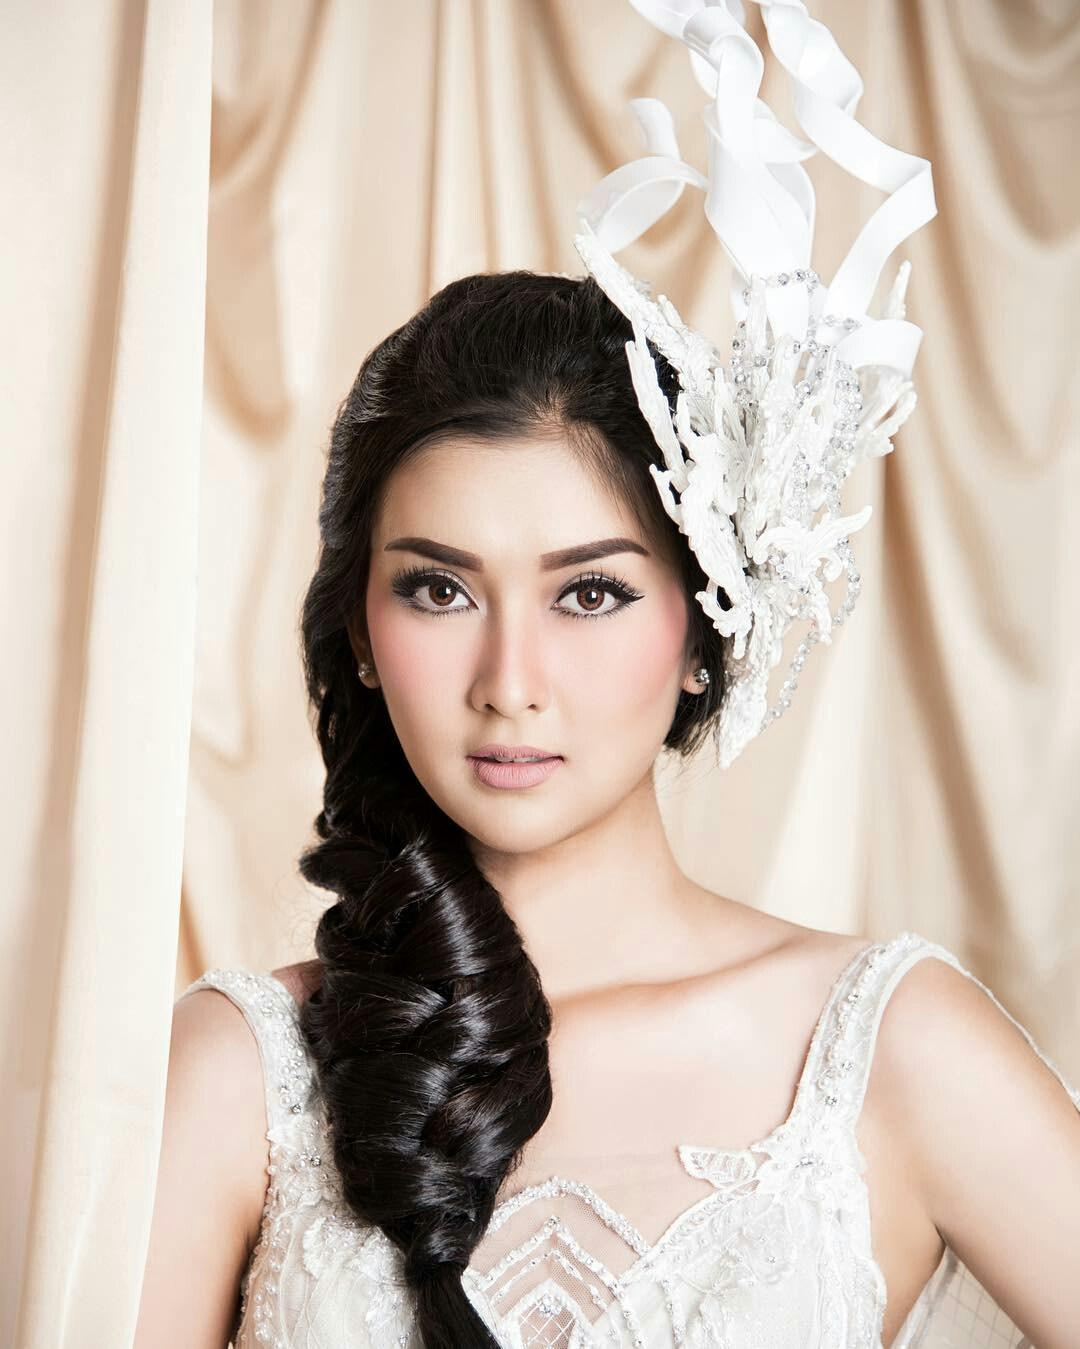 Cận cảnh nhan sắc tuyệt mỹ của người đẹp Indonesia đăng quang Hoa hậu Quốc tế 2017-4